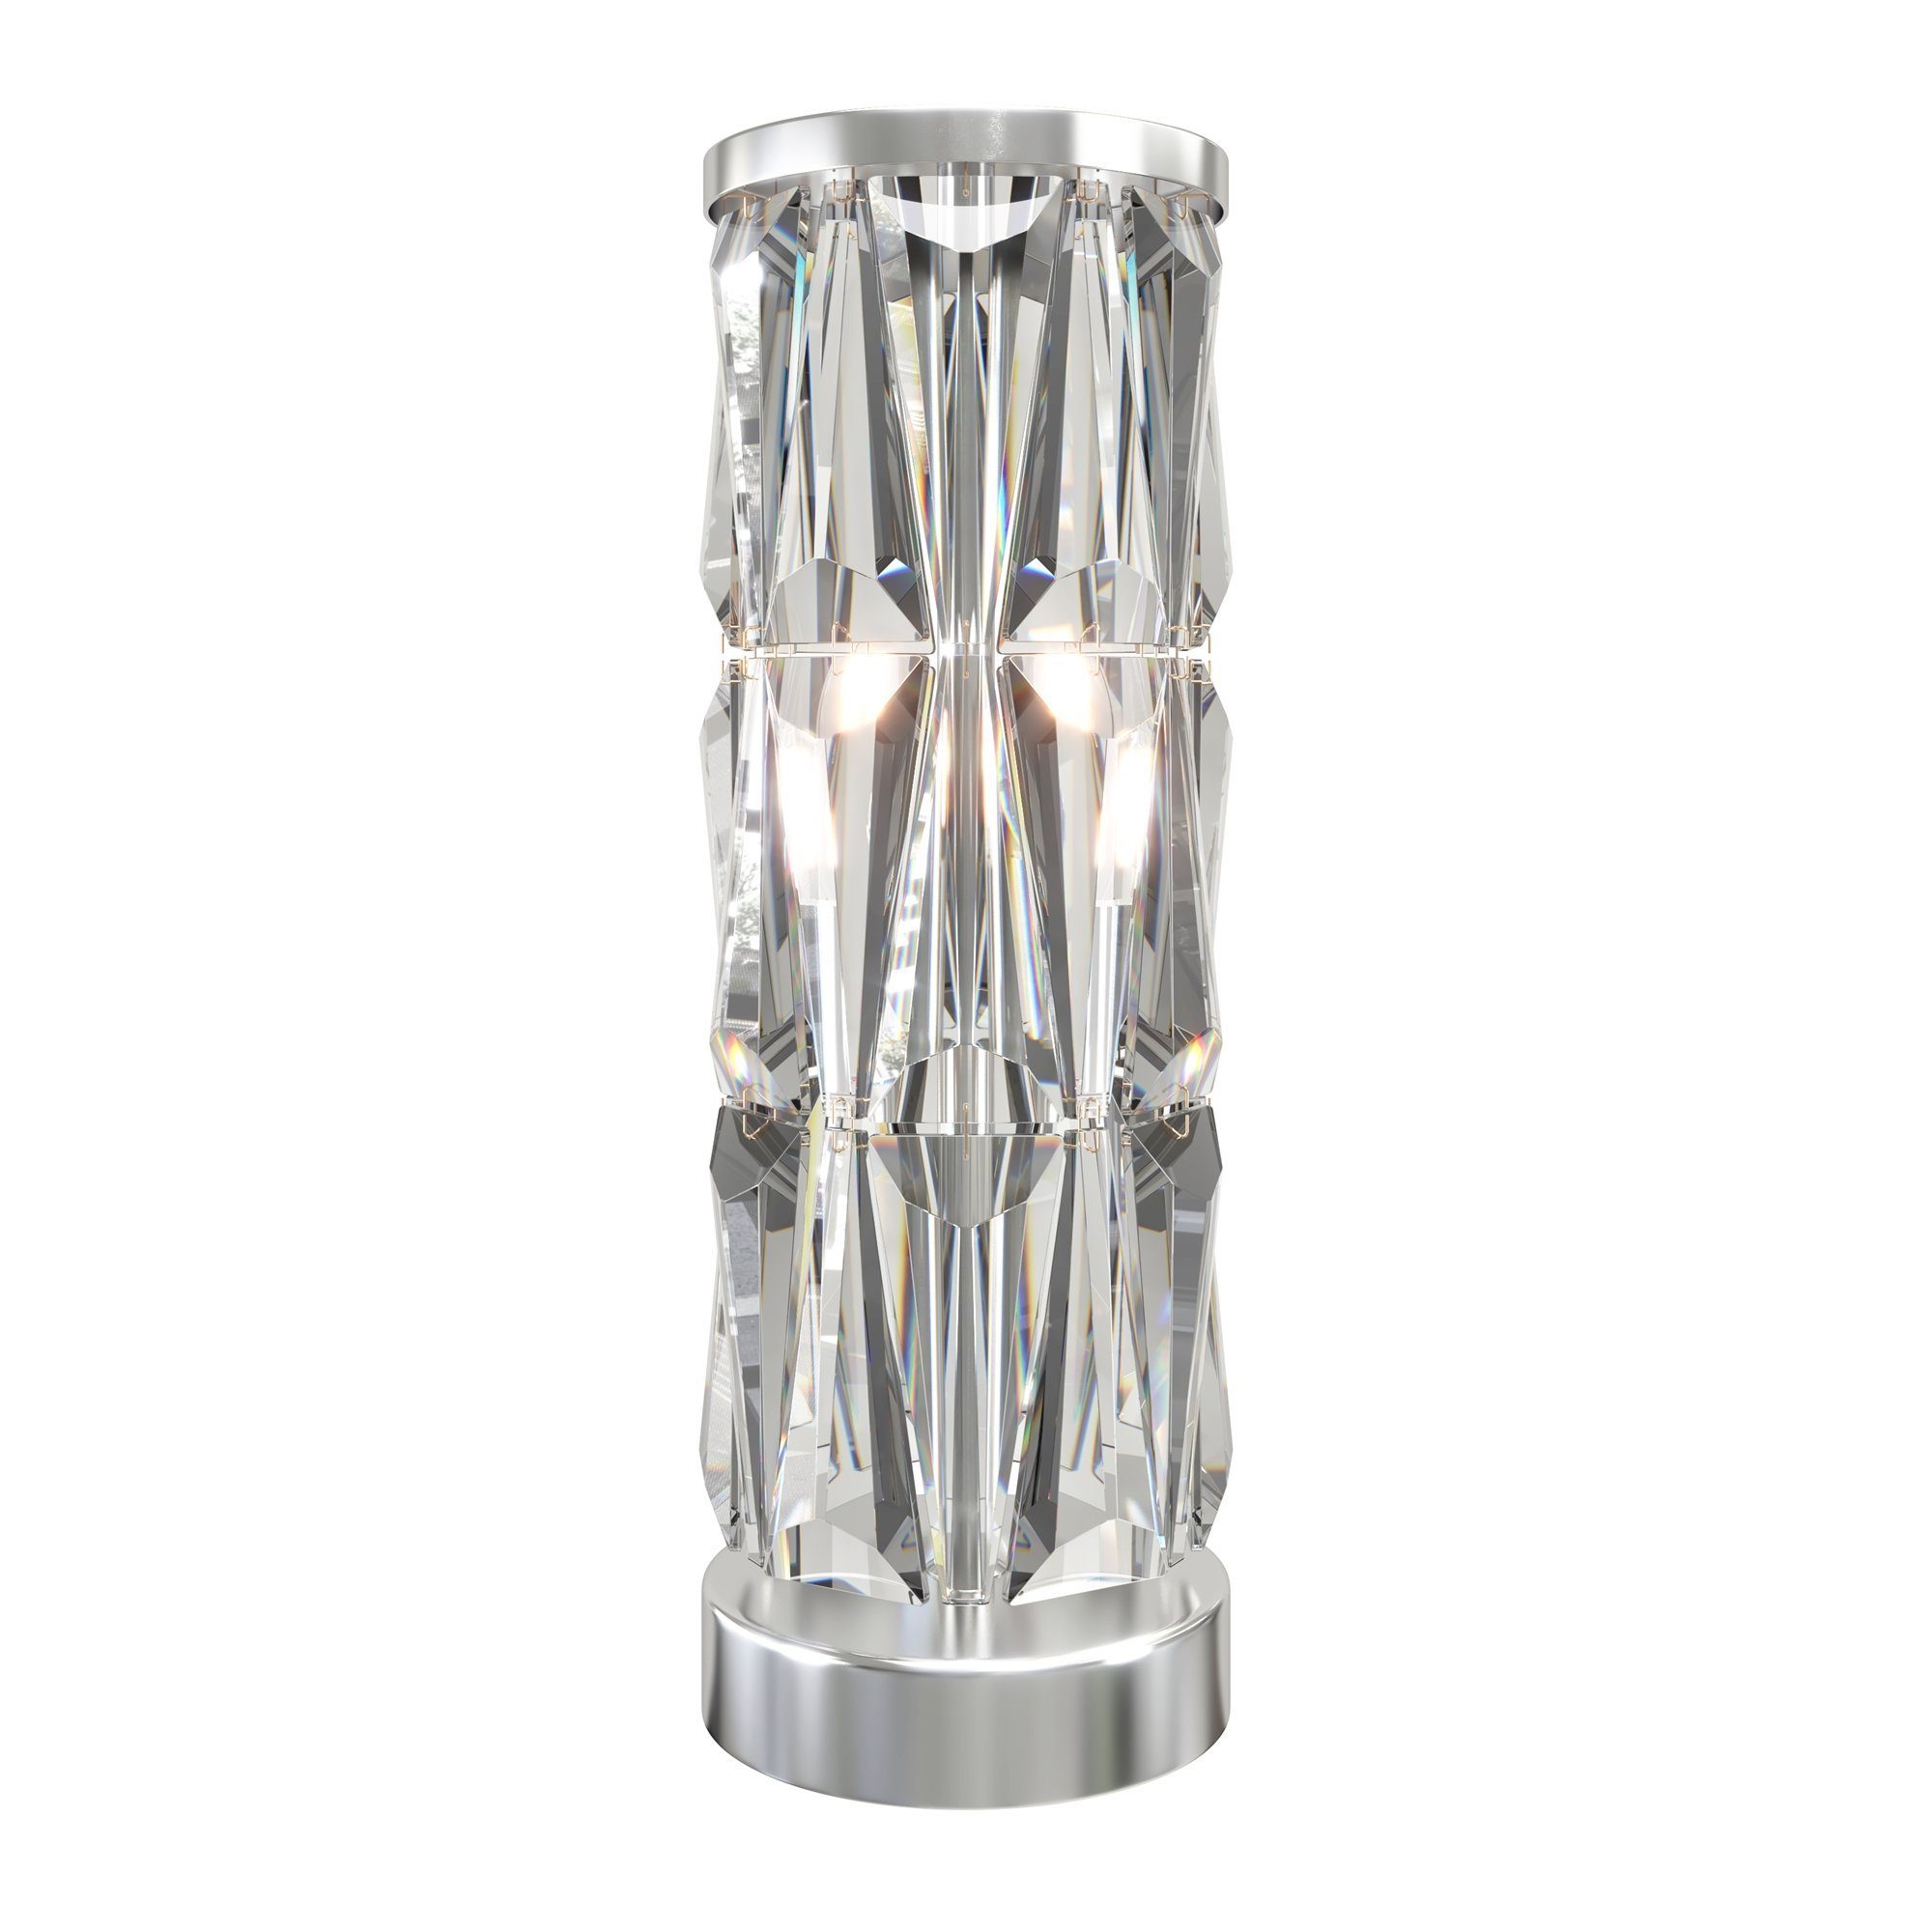 MAYTONI DECORATIVE LIGHTING Tischleuchte Puntes 1 20x58x20 cm, ohne Leuchtmittel, hochwertige Design Lampe & dekoratives Raumobjekt